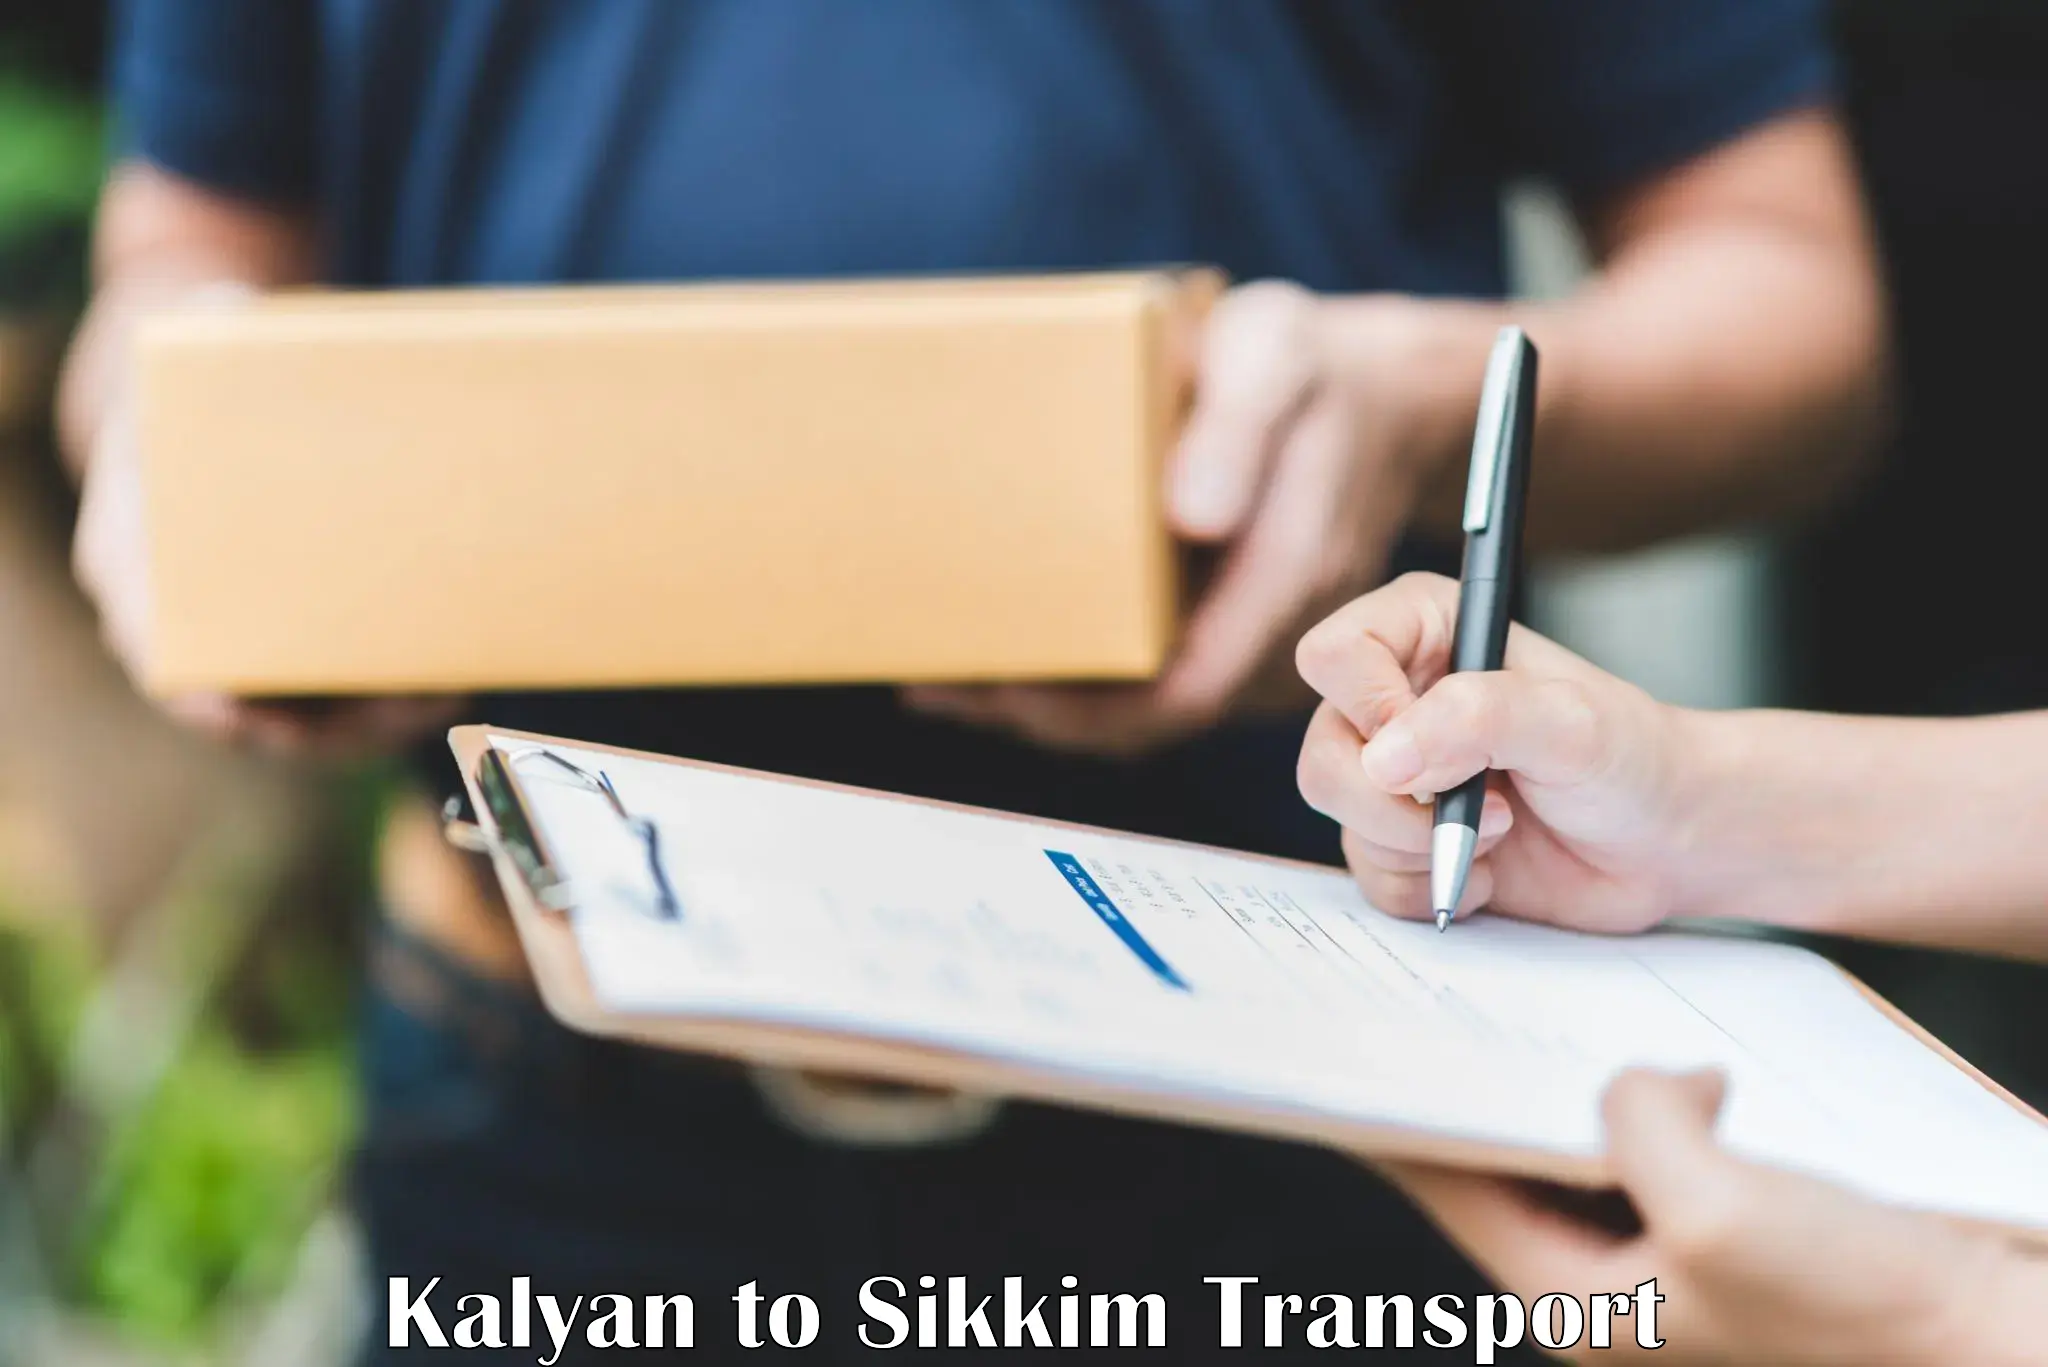 Nearest transport service Kalyan to Namchi